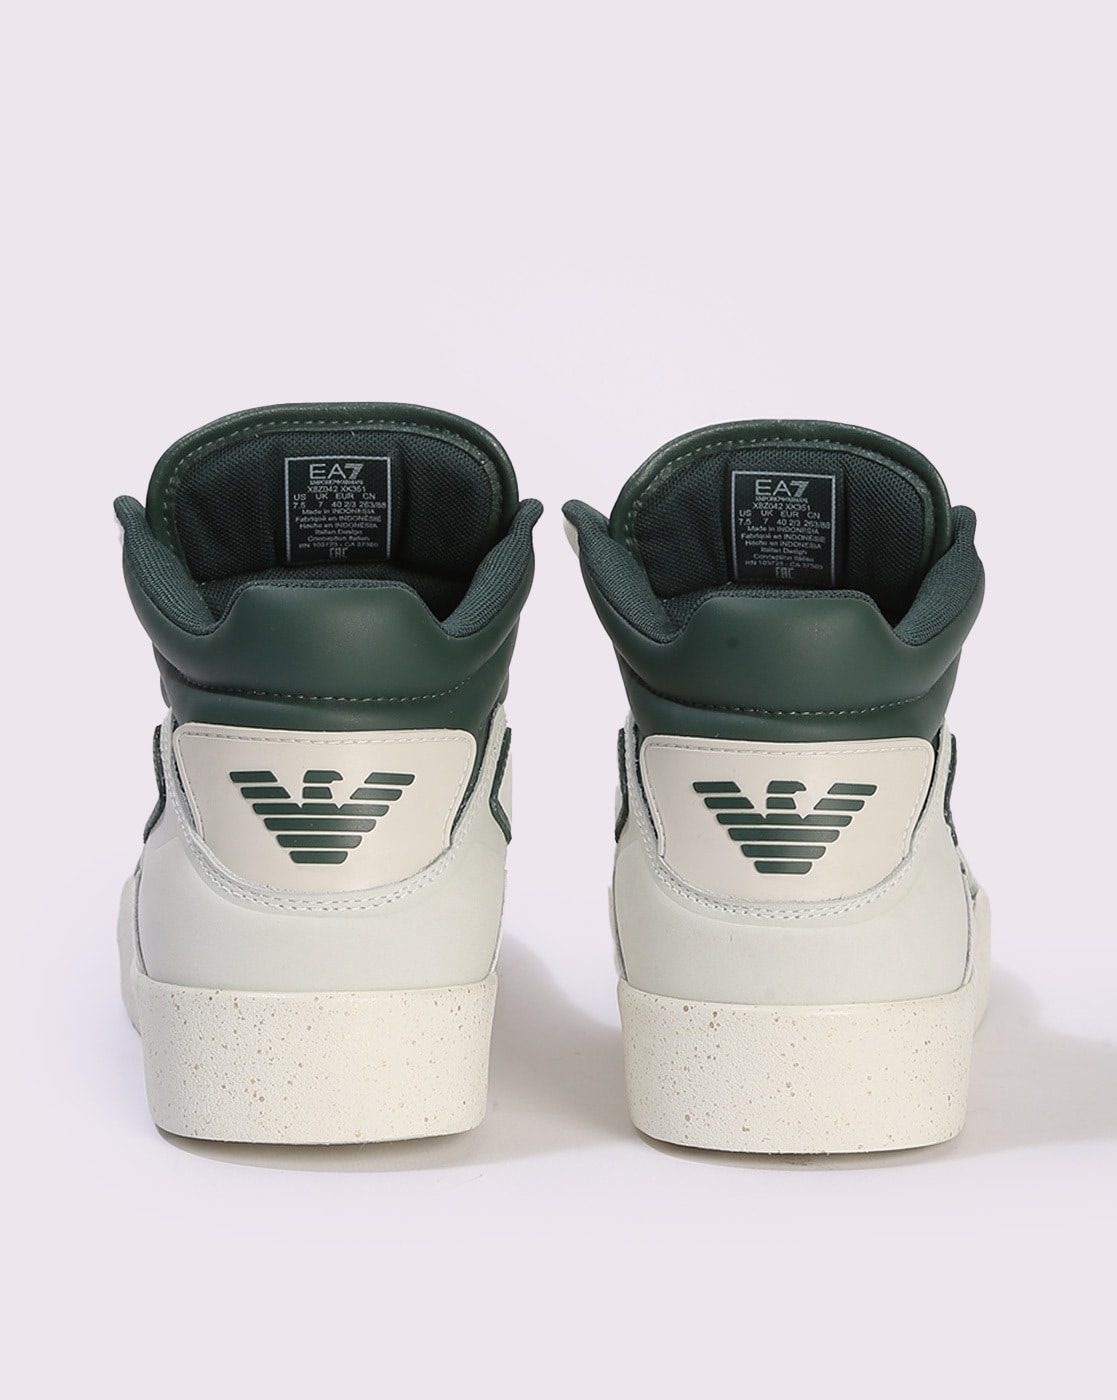 Armani EA7 sneakers with maxi eagle logo